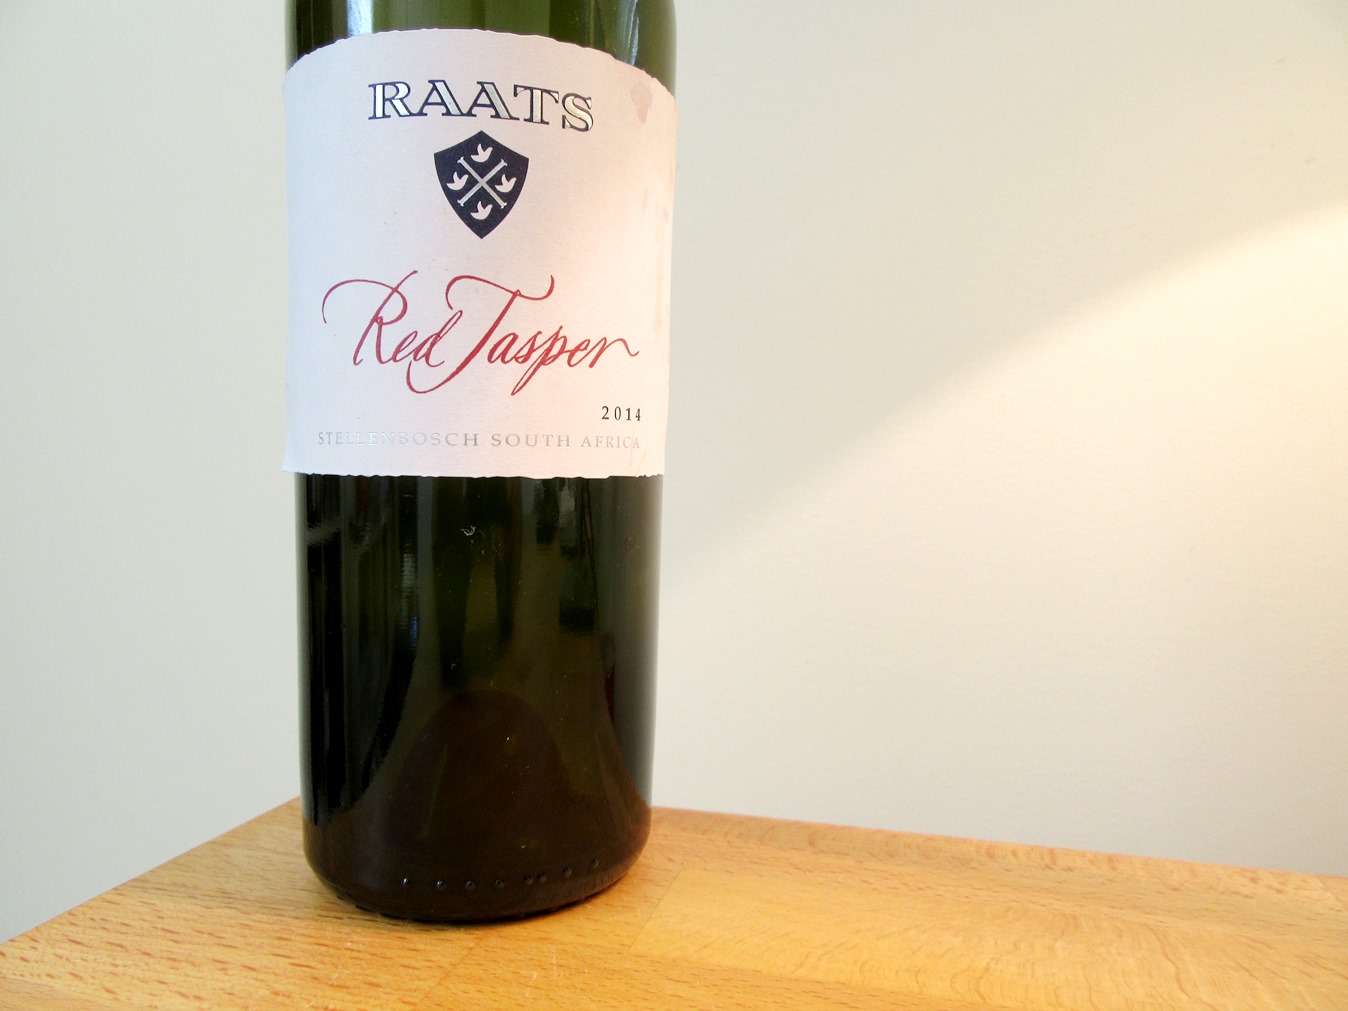 Raats, Red Jasper 2014, Stellenbosch, South Africa, Wine Casual